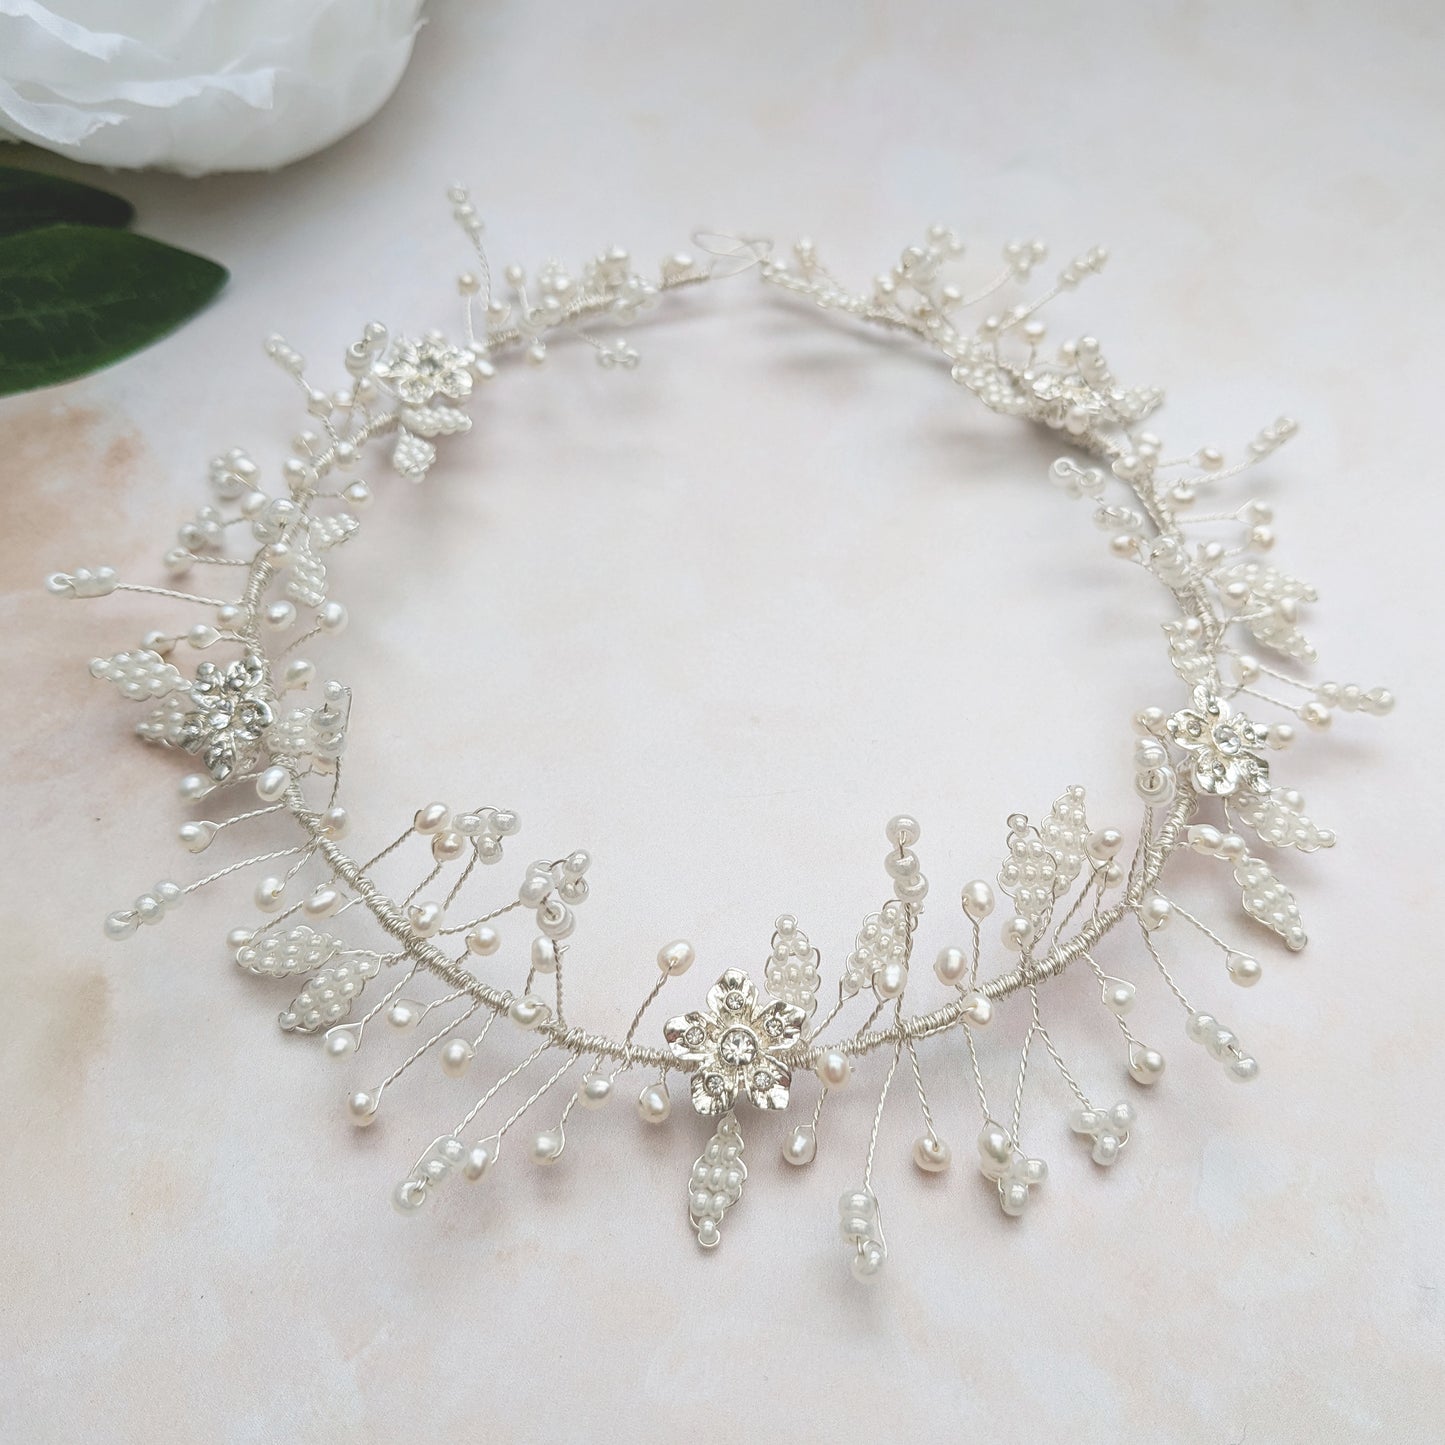 Modern floral bridal hair vine for weddings - Susie Warner